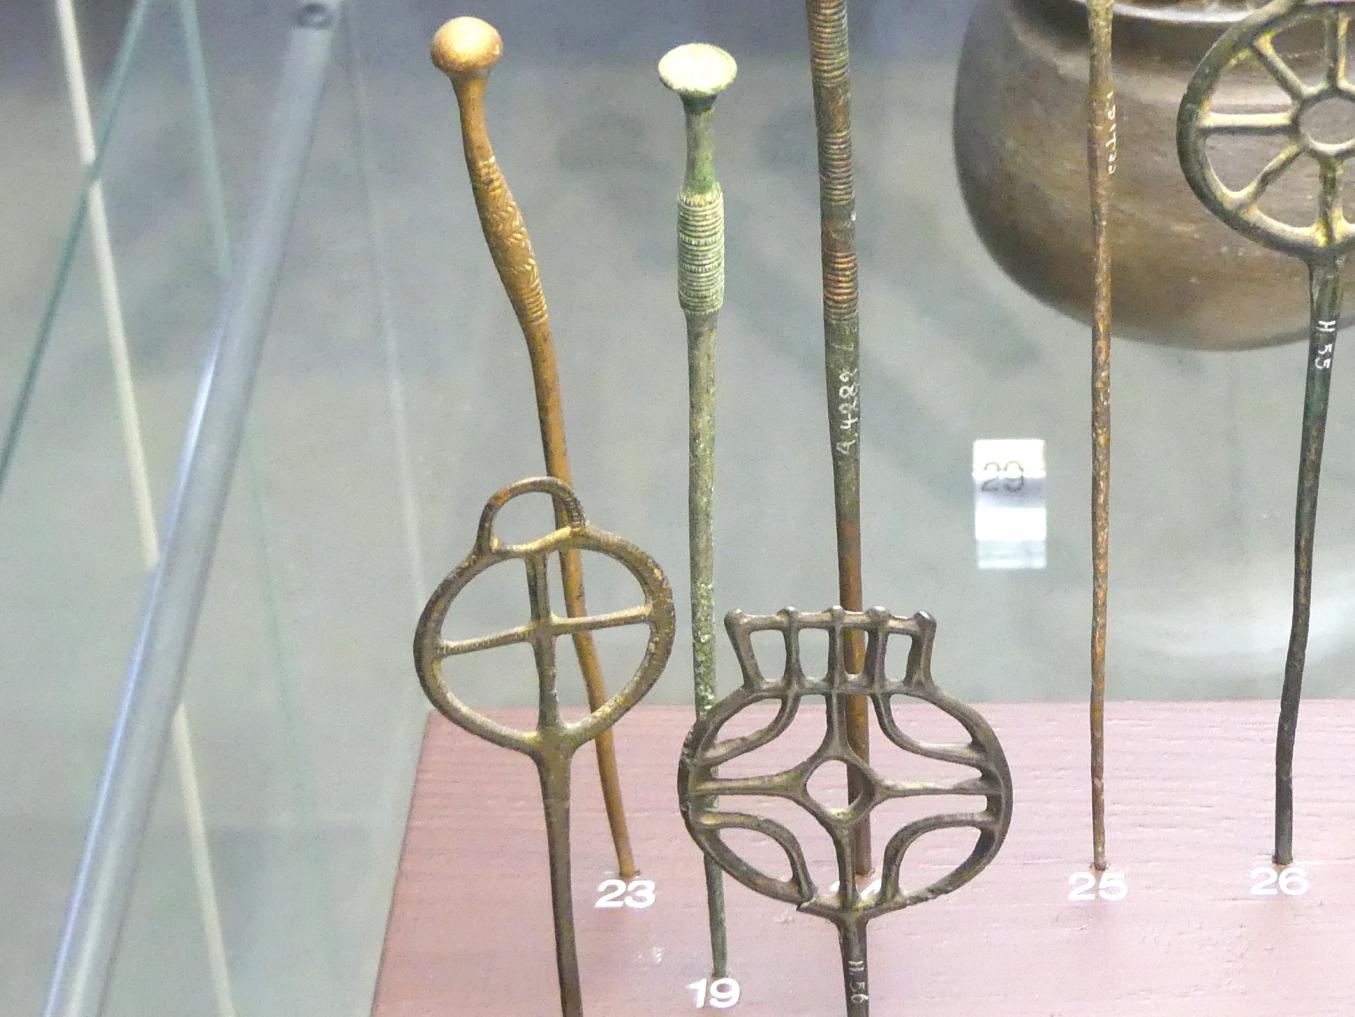 Trompetenkopfnadel, Mittlere Bronzezeit, 3000 - 1300 v. Chr., Späte (Jüngere) Bronzezeit, 1500 - 700 v. Chr.